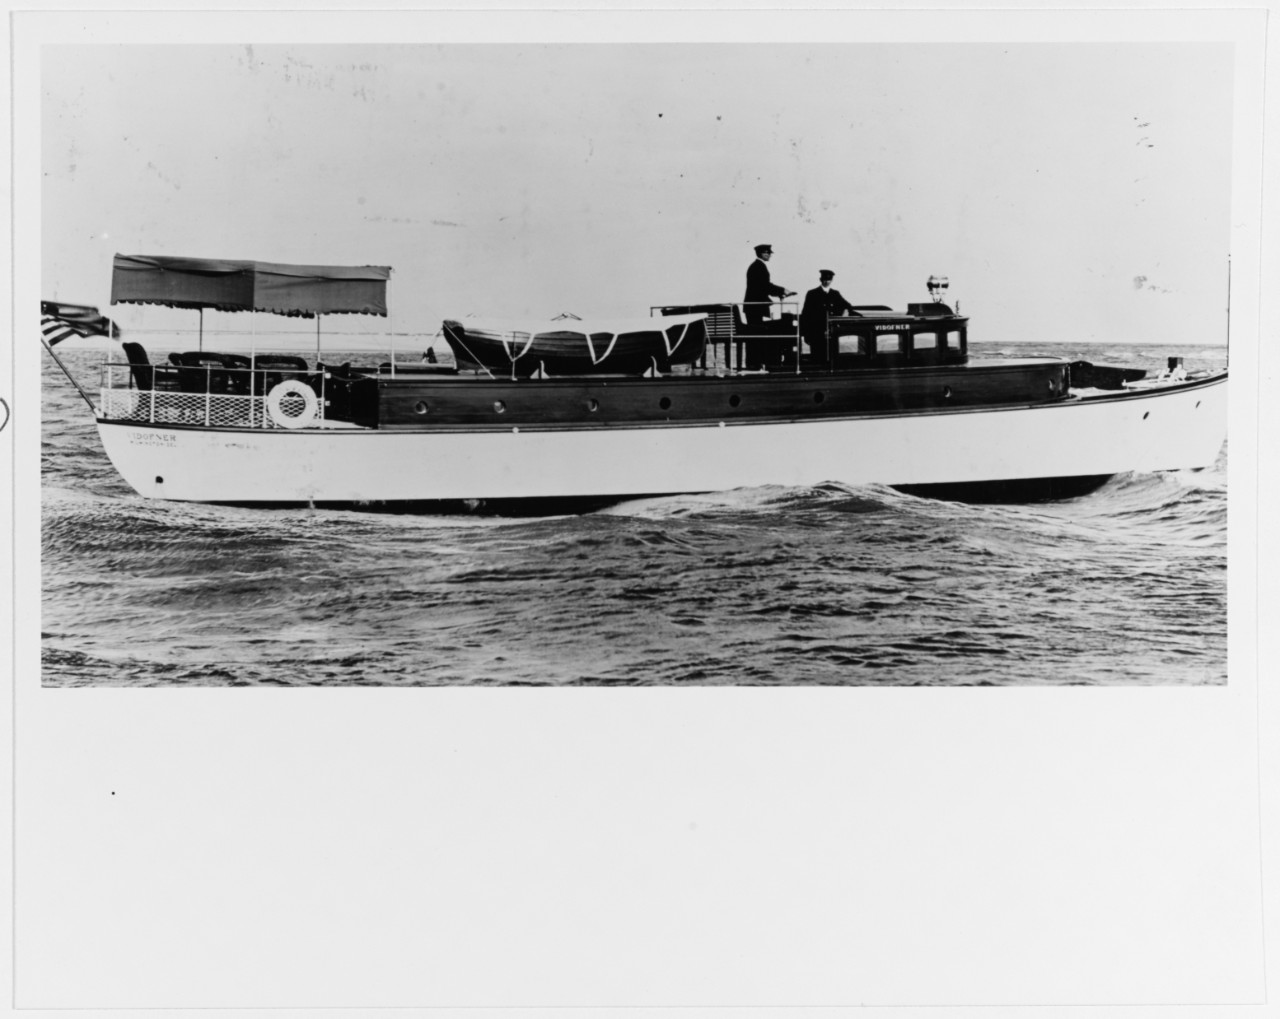 VIDOFNER (Motor Boat)